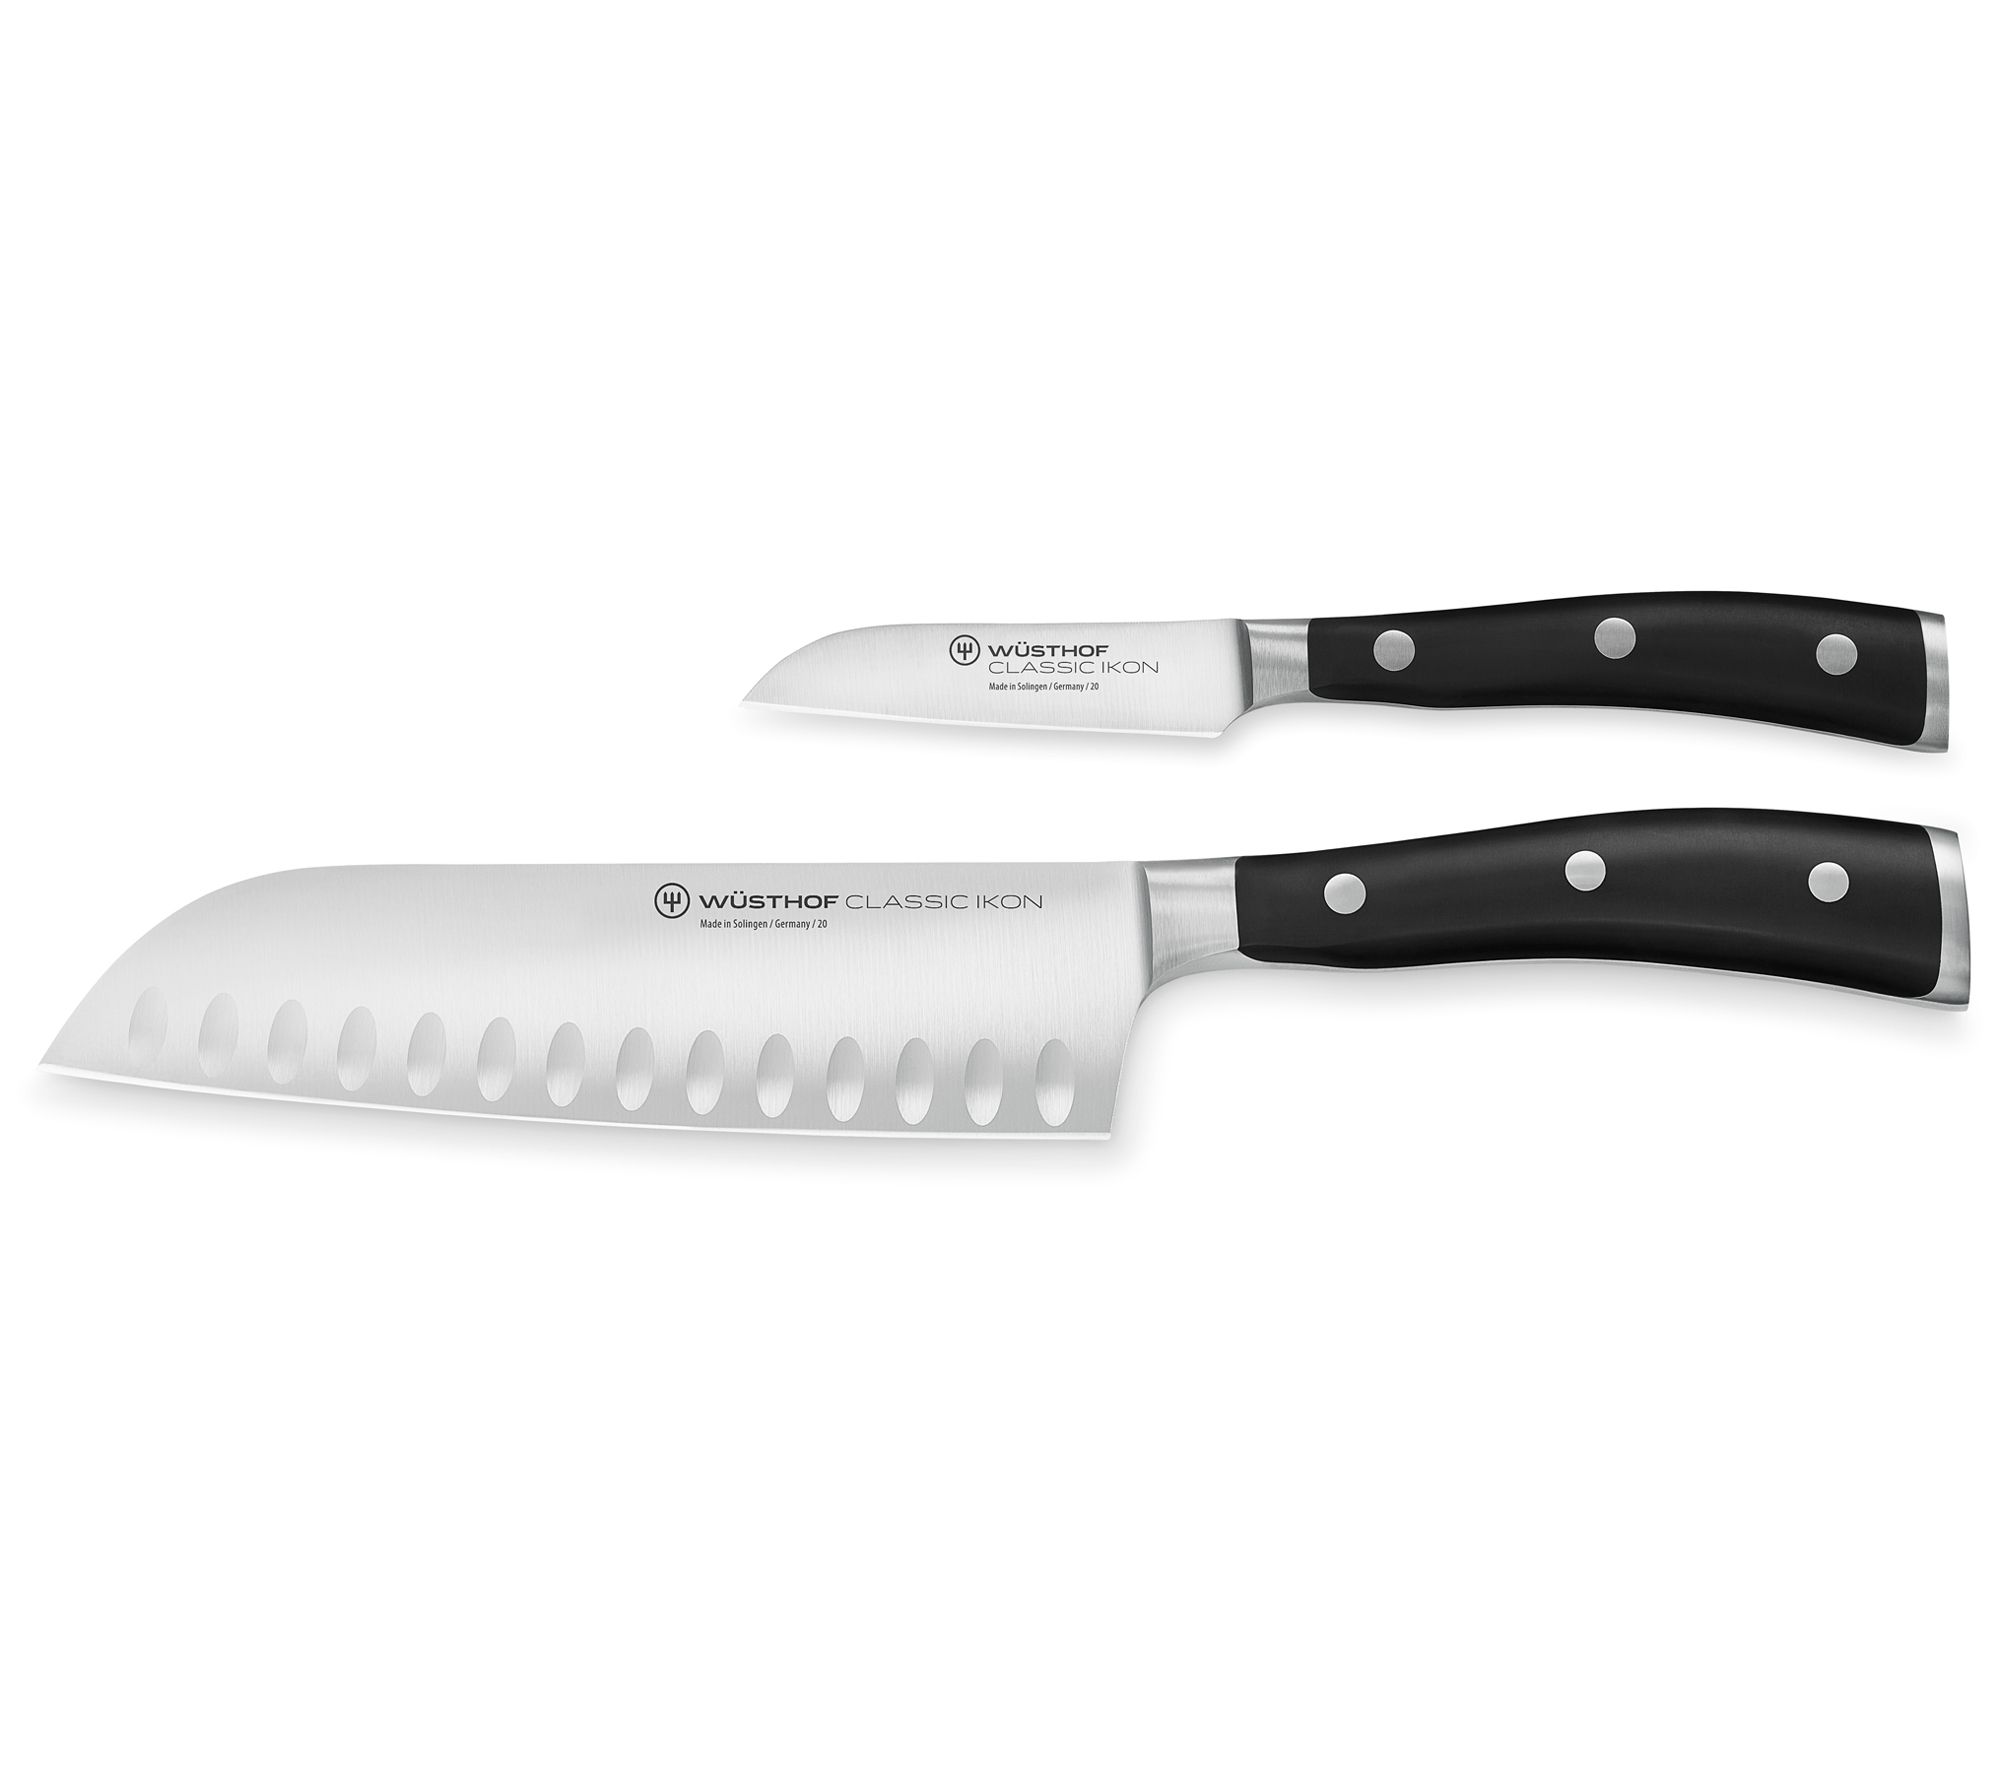 Starfrit Ceramic Paring Knife (3 In.) : Target